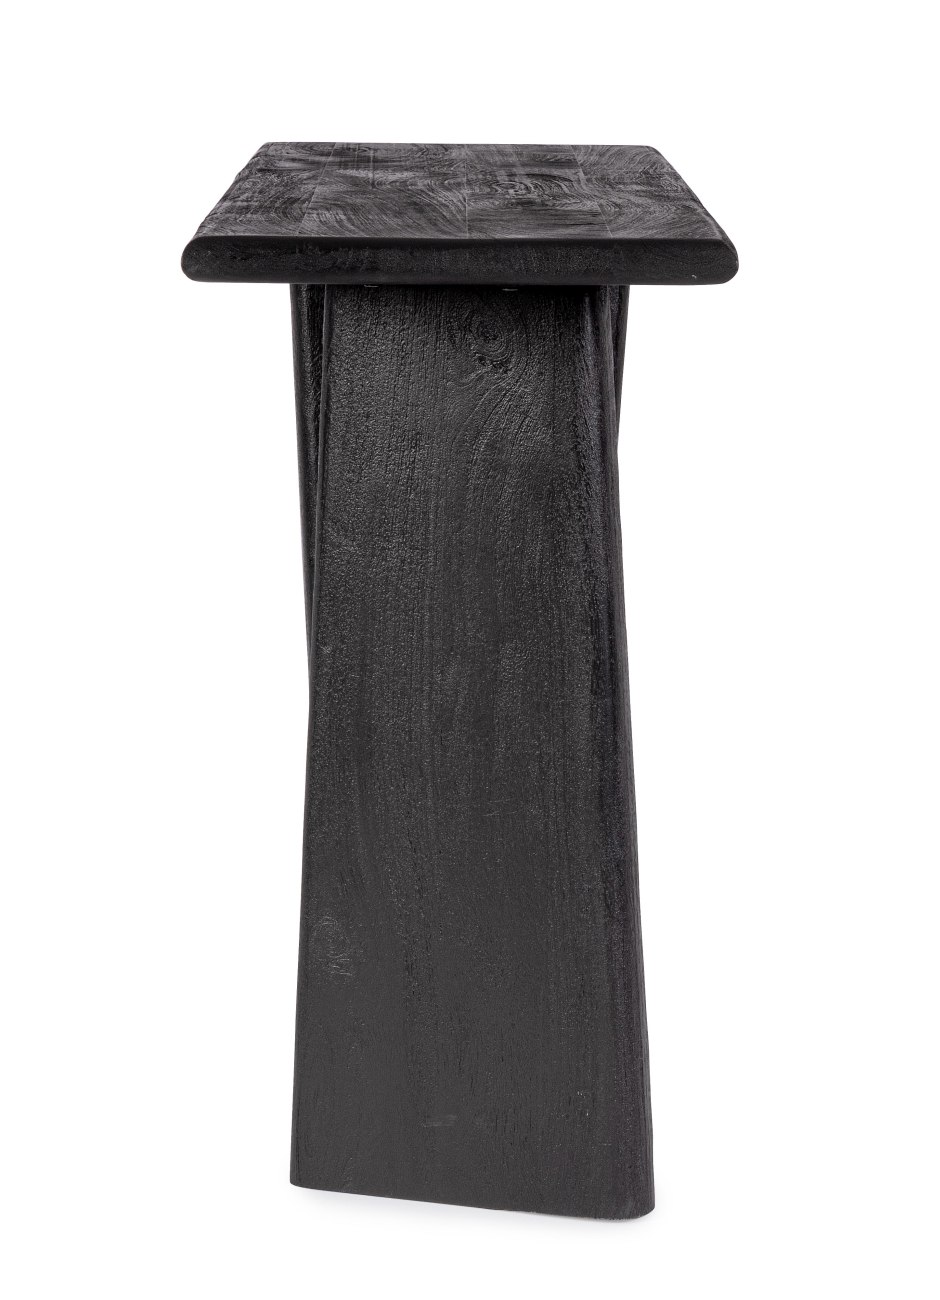 Die Konsole Zecatecas überzeugt mit ihrem modernen Design. Gefertigt wurde sie aus Mangoholz, welches einen schwarzen Farbton besitzt. Das Gestell ist auch aus Mangoholz. Die Konsole besitzt eine Breite von 130 cm.